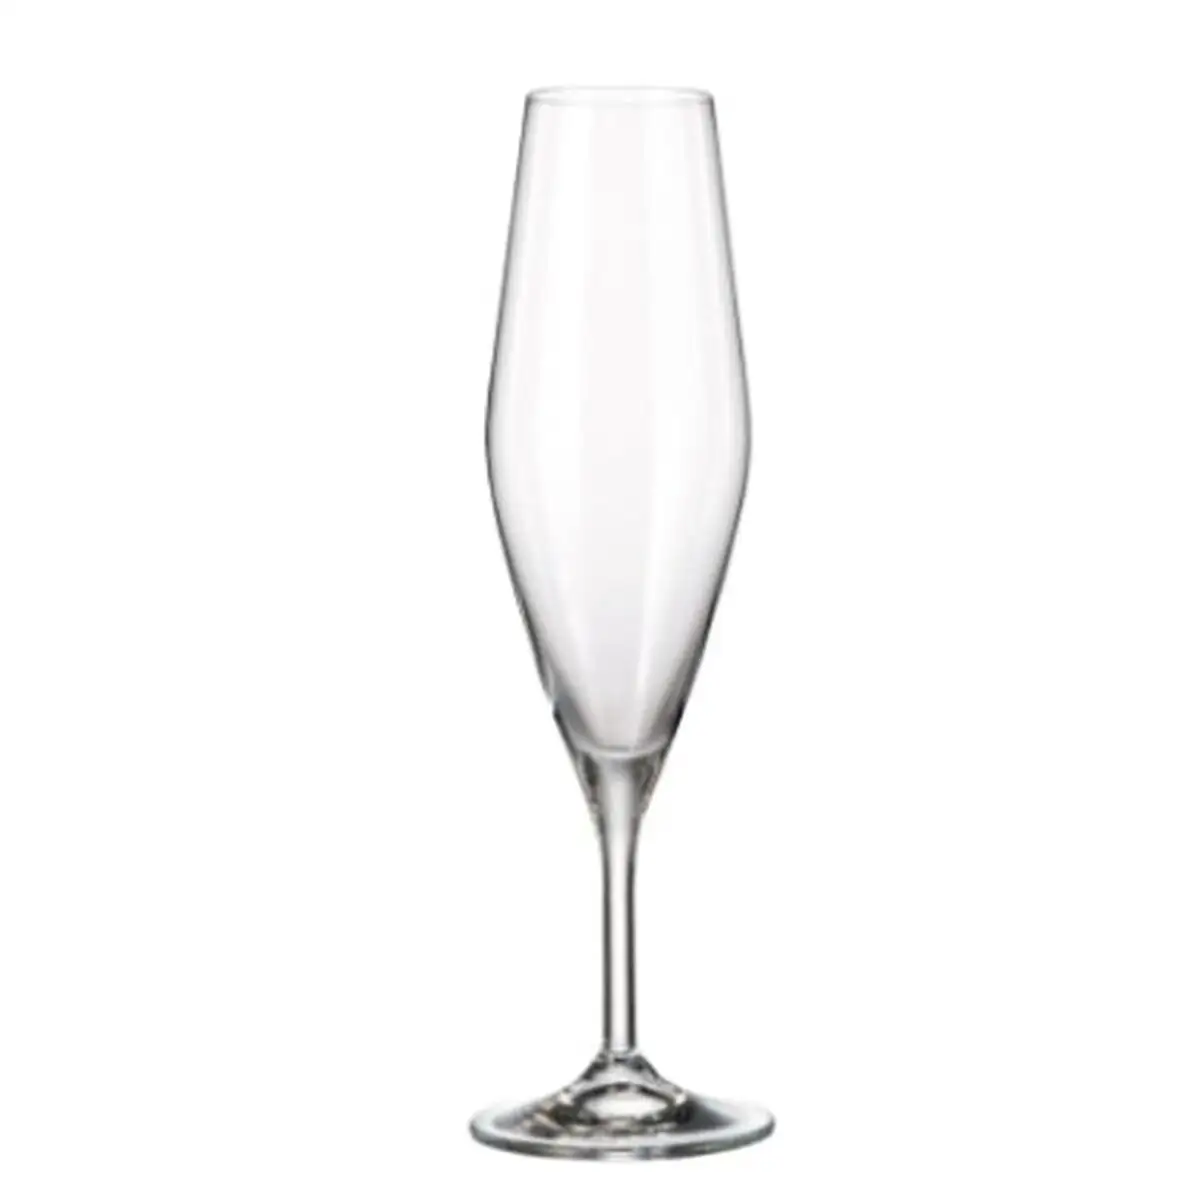 Set de verres bohemia crystal galaxia 210 ml champagne 6 unites_3497. DIAYTAR SENEGAL - Là où Chaque Produit a son Histoire. Découvrez notre gamme de produits, chacun portant en lui le récit de l'artisanat et de la passion, pour vous offrir une expérience de shopping authentique.